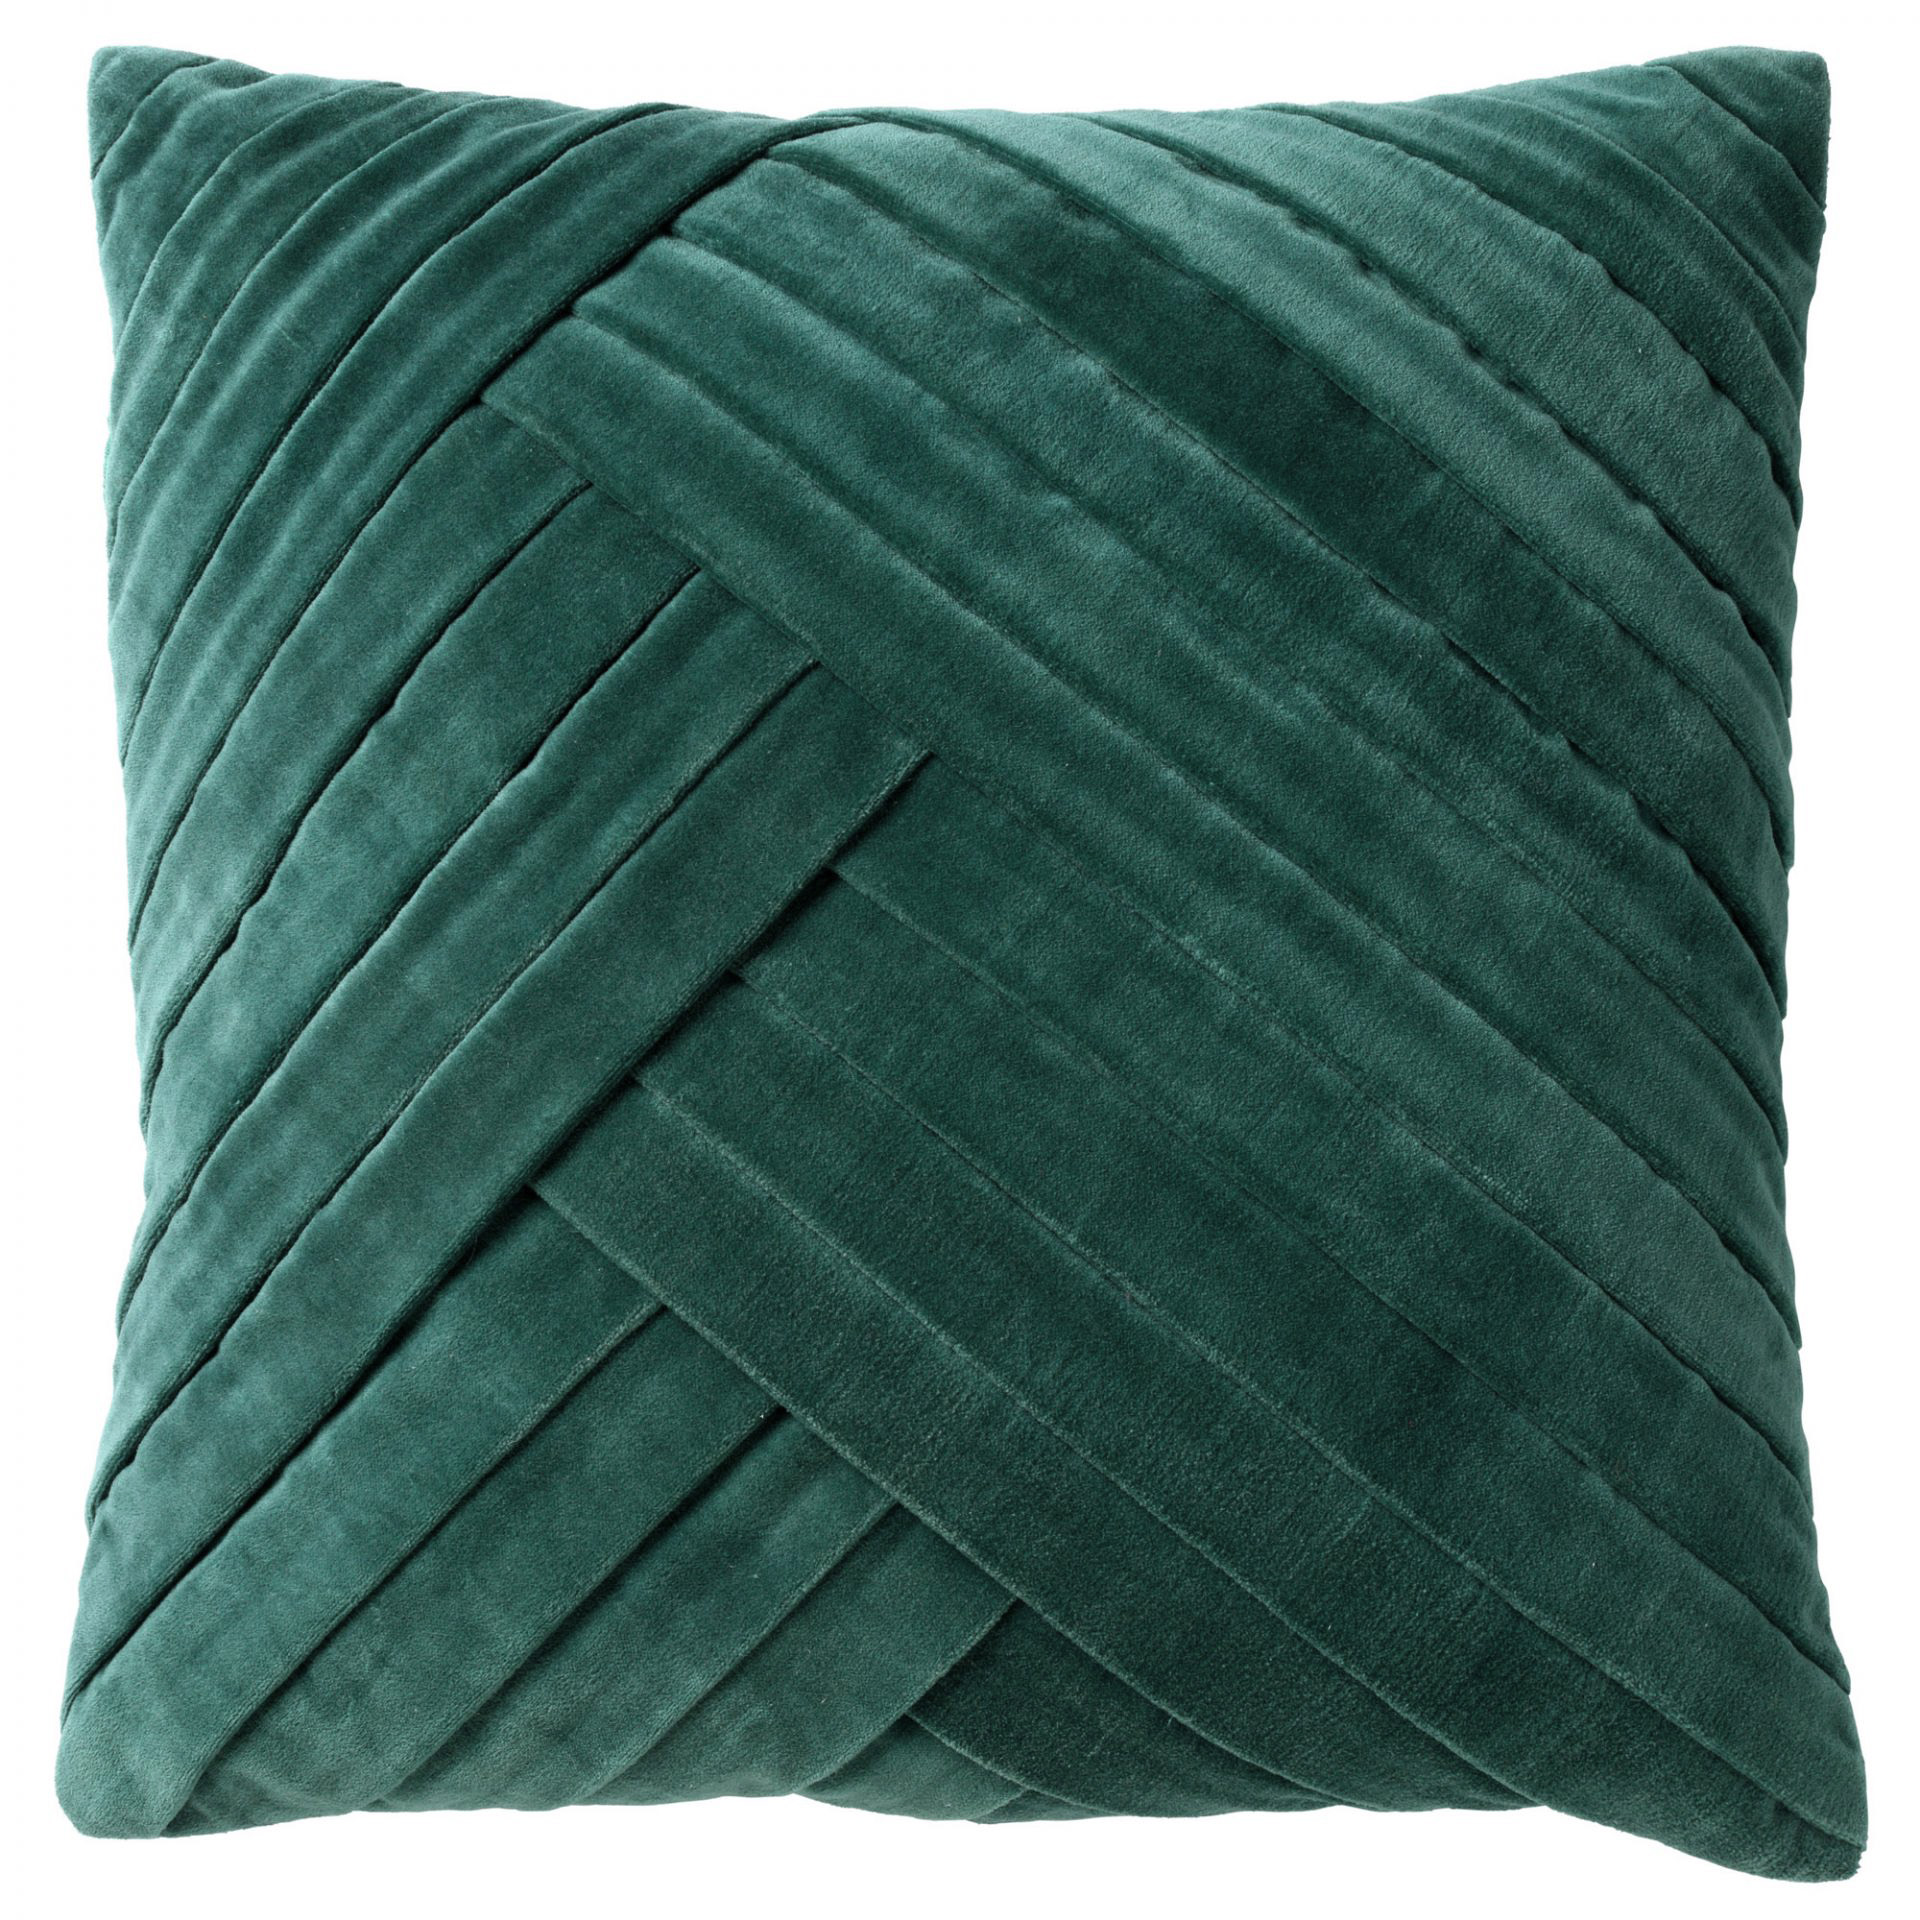 GIDI - Cushion 45x45 cm Sagebrush Green - green